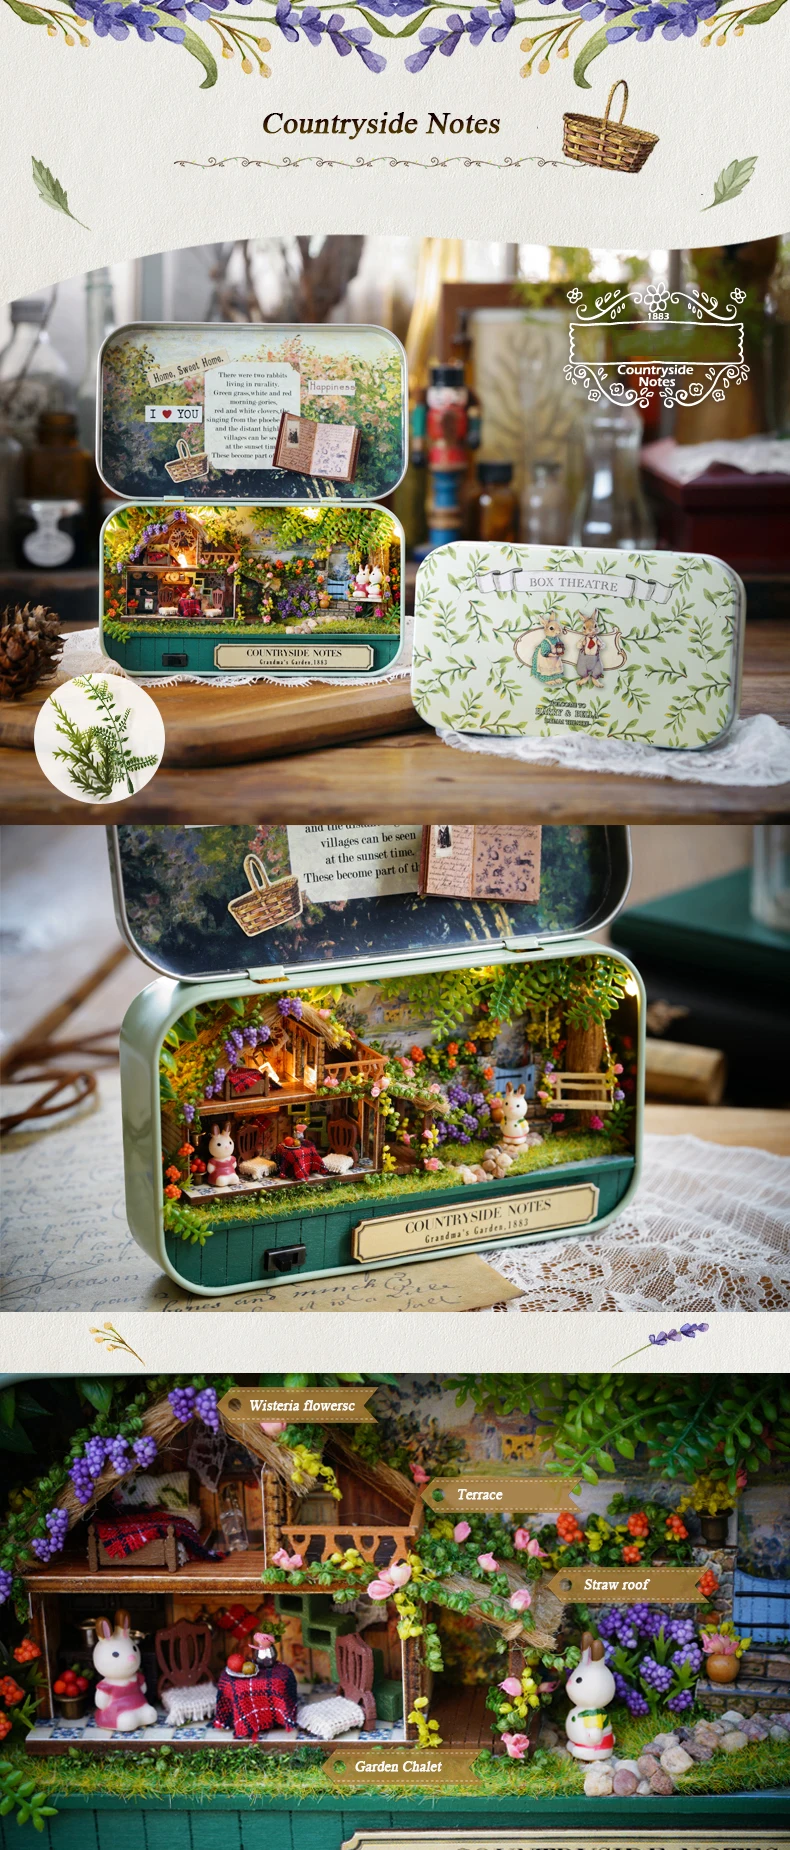 Коробка театр ностальгические тема миниатюрная сцена деревянный миниатюрный Игрушка Головоломка DIY кукла домашняя мебель сельской